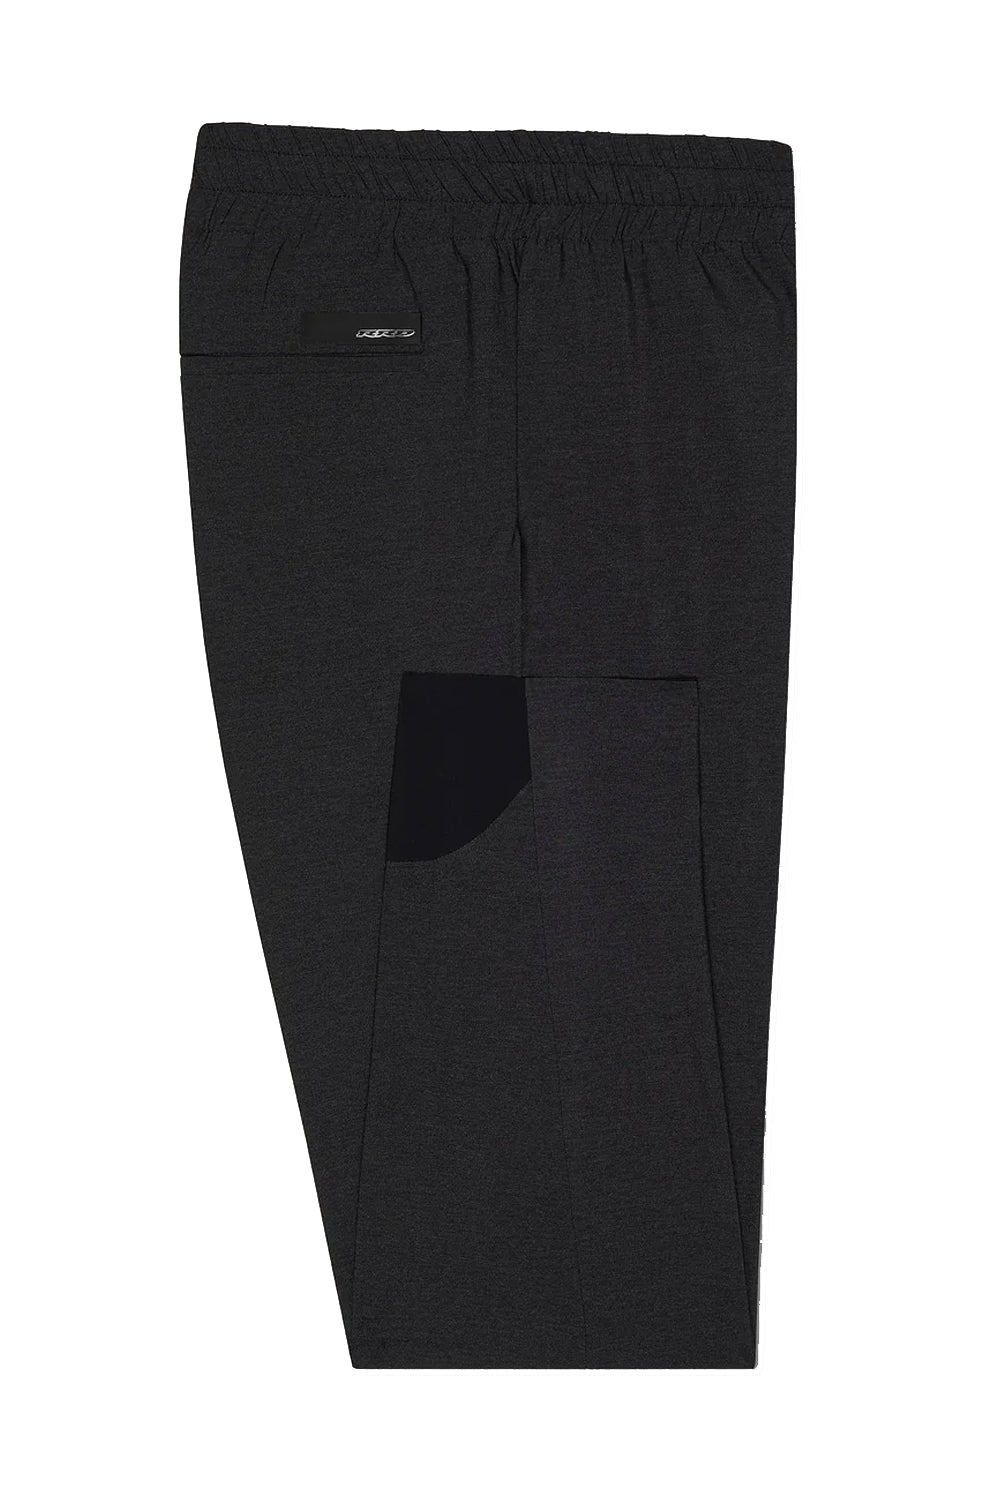 Image of RRD Pantaloni extralight jumper